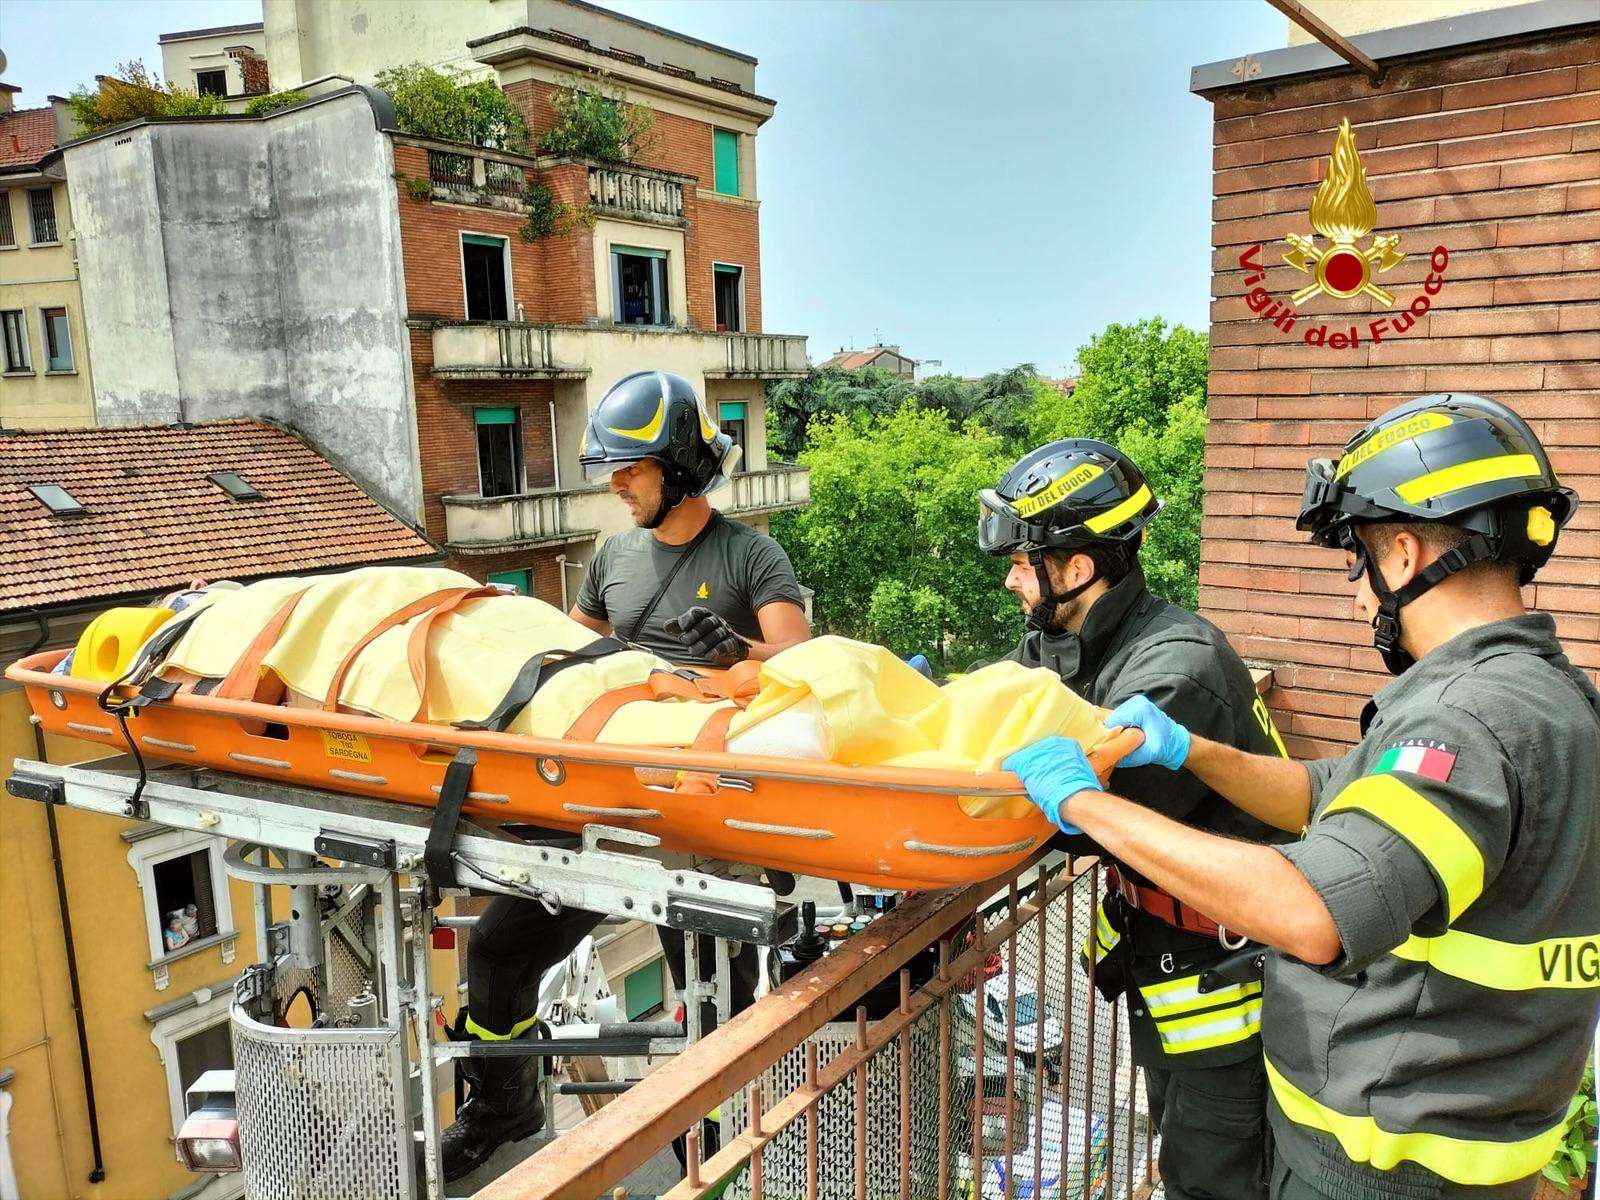 Vigili del fuoco. Milano. I vigili del fuoco salvano una donna calandola con il cestello - 21/06/2022